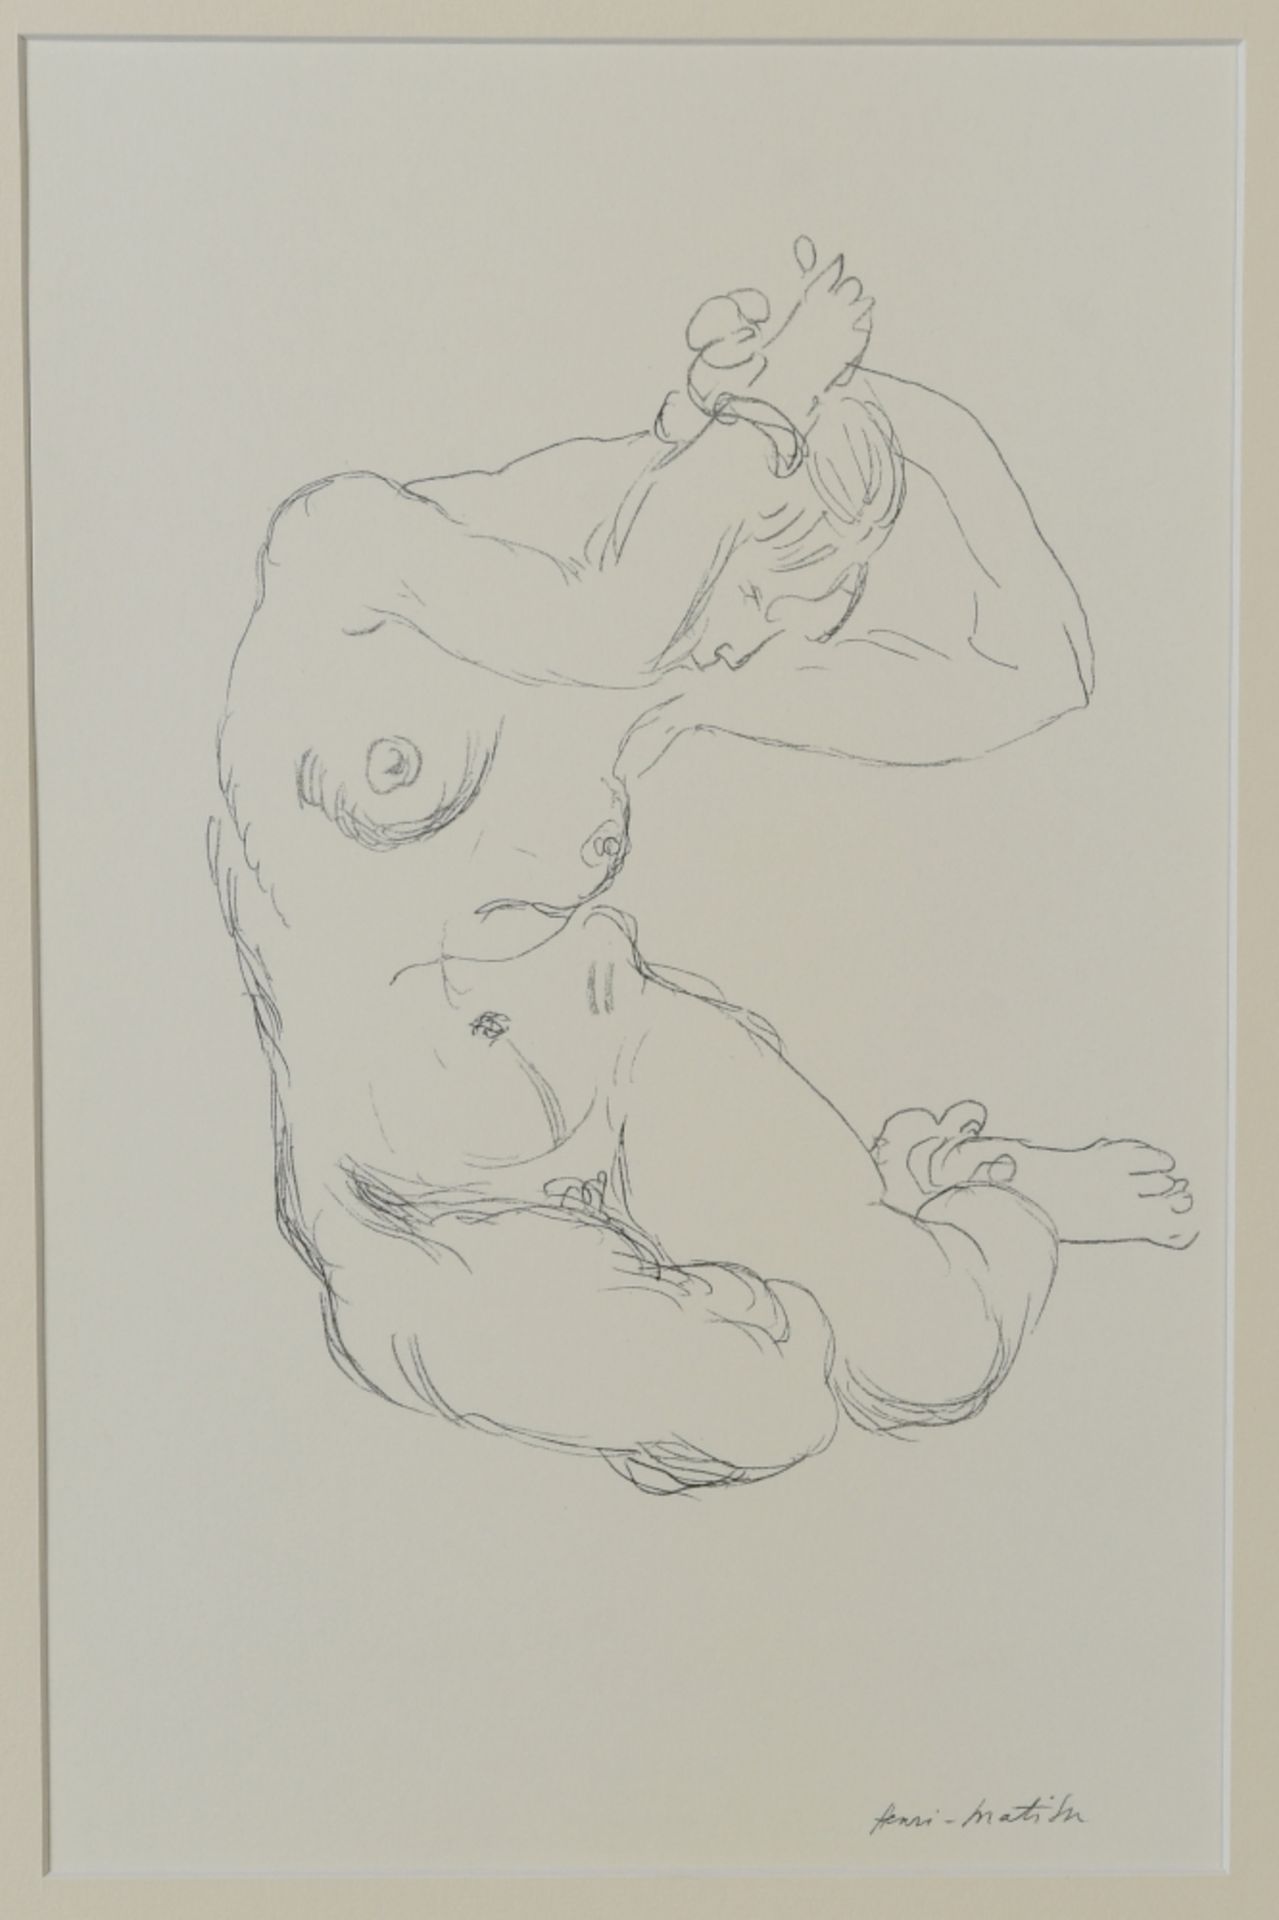 Matisse, Henri, nach, 1869 Cateau/Cambresis - 1954 Nizza